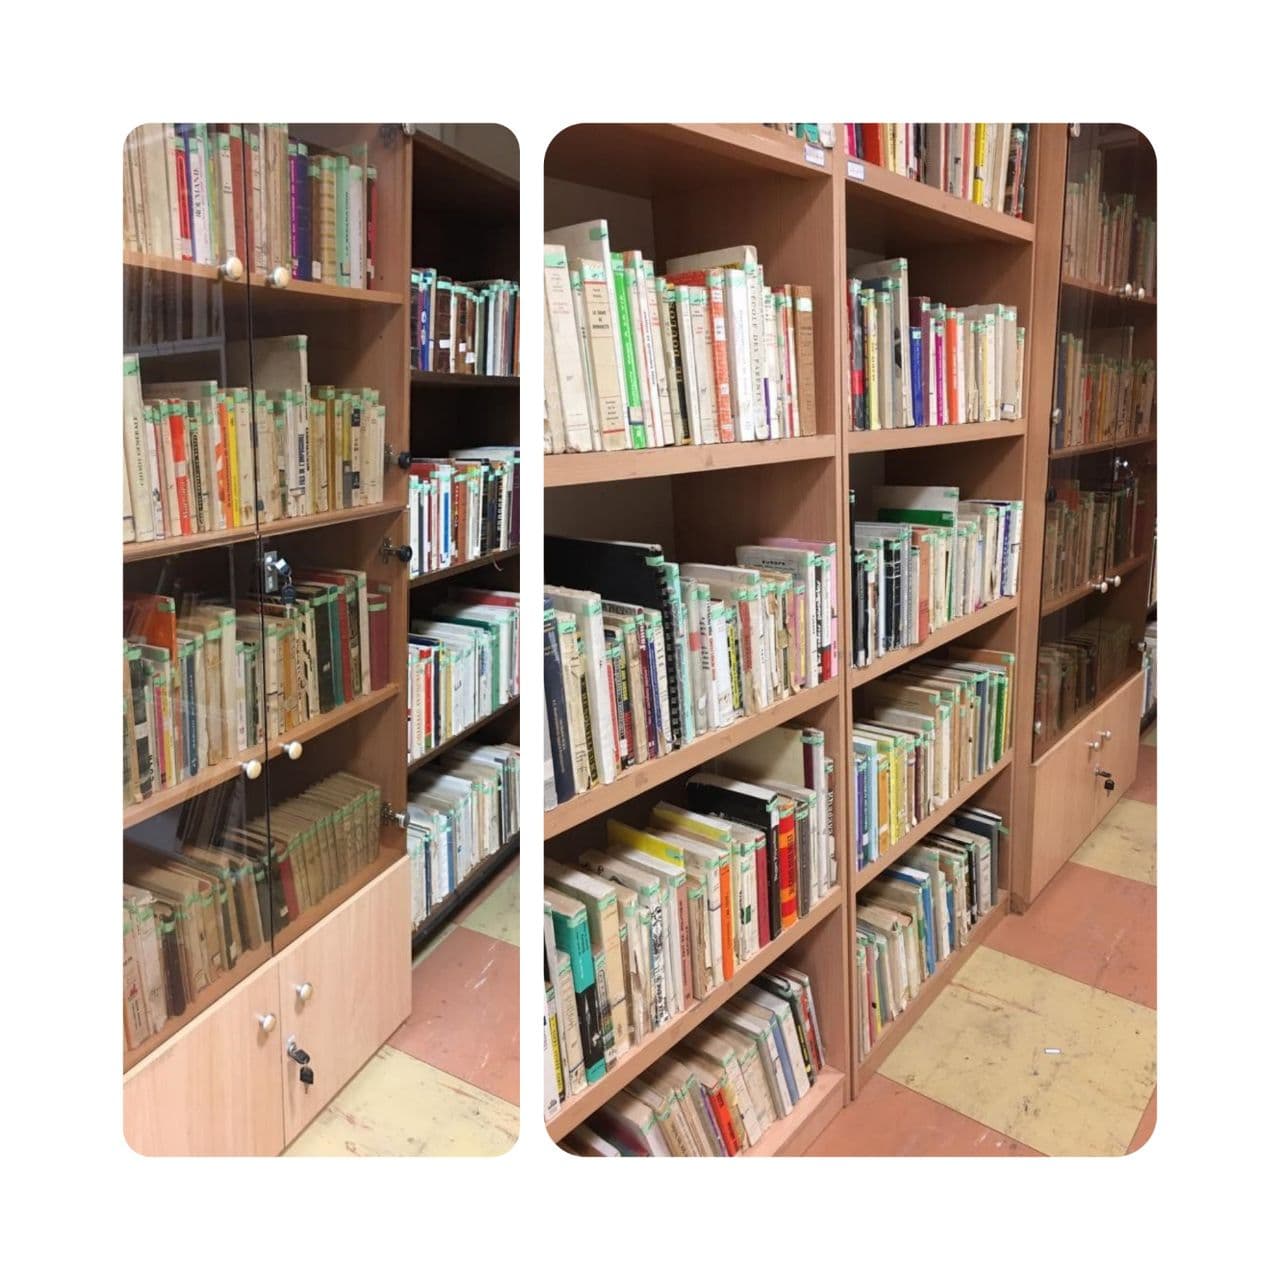 اتمام فاز دوم ساماندهی منابع و کتابهای مخزن کتابخانه مجموعه سعدآباد